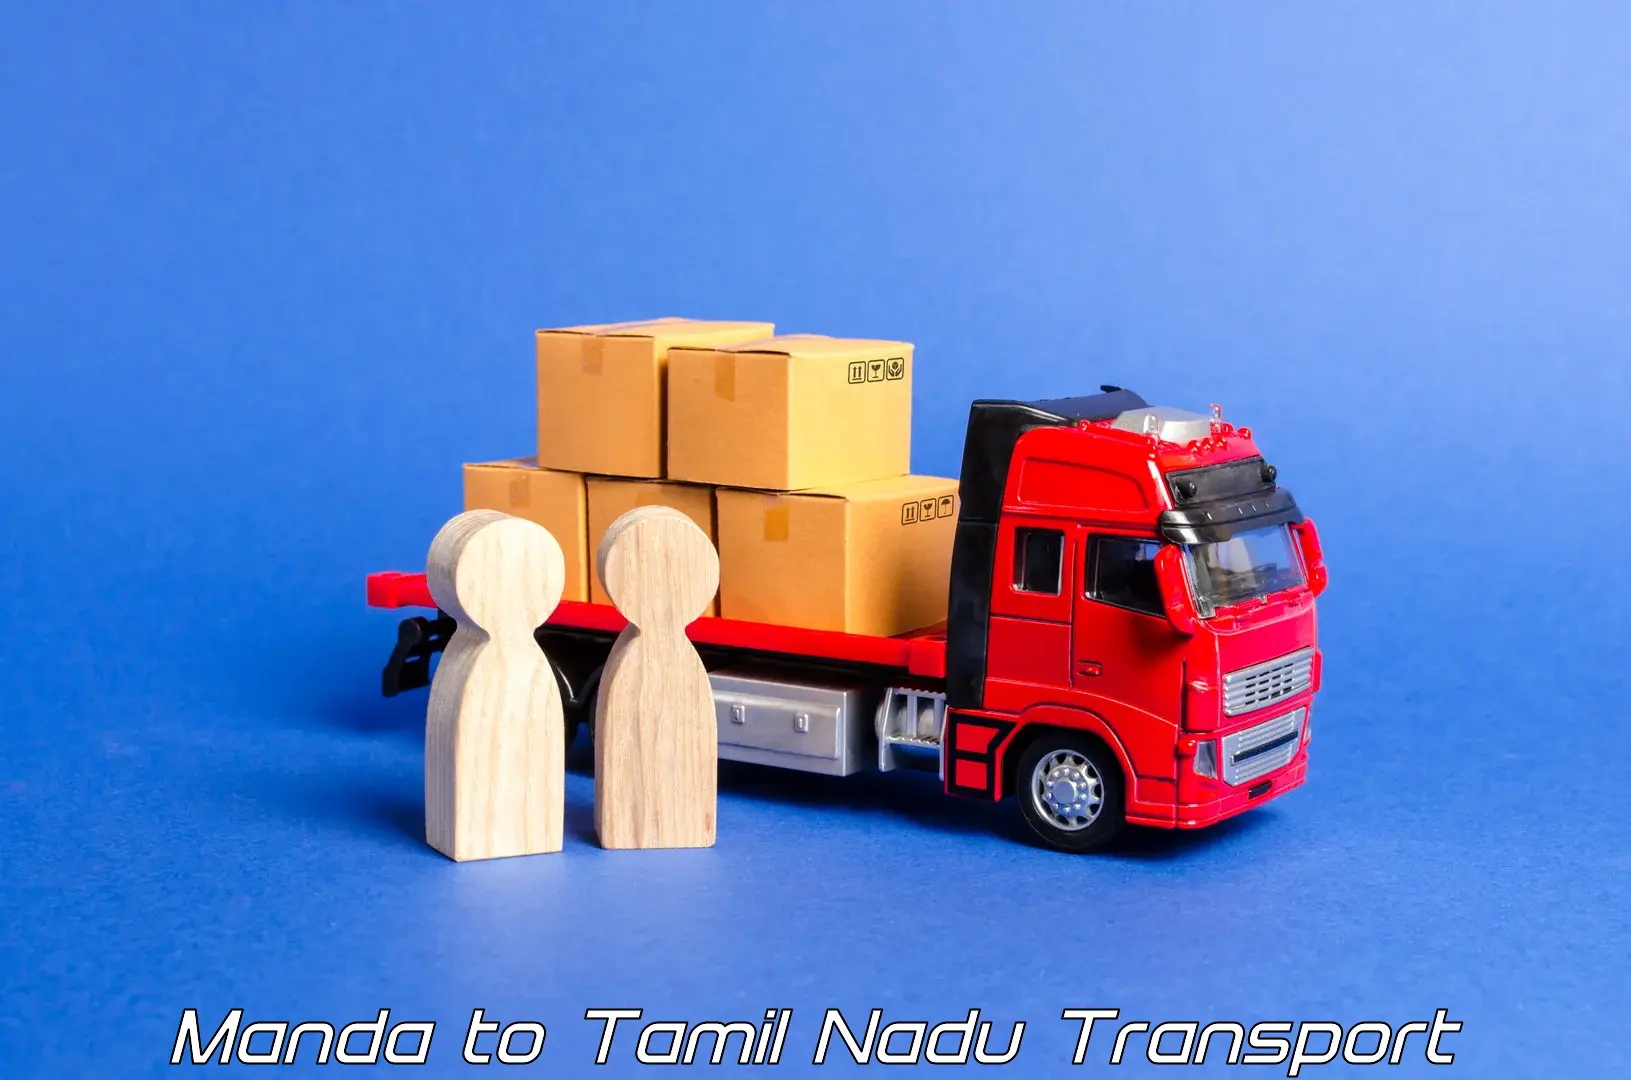 Commercial transport service Manda to Kanchipuram